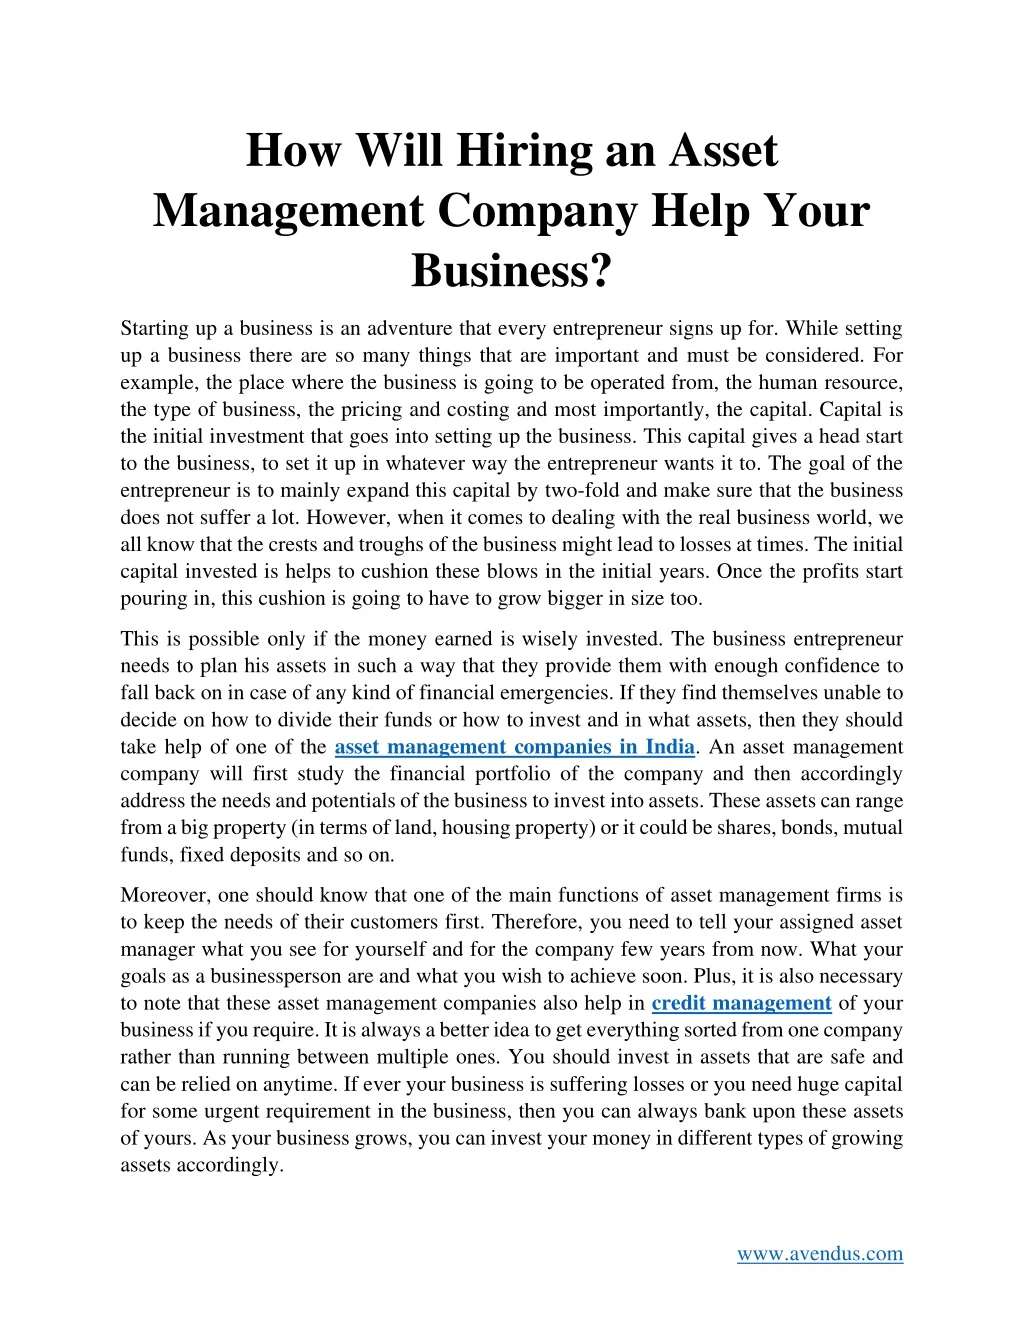 how will hiring an asset management company help